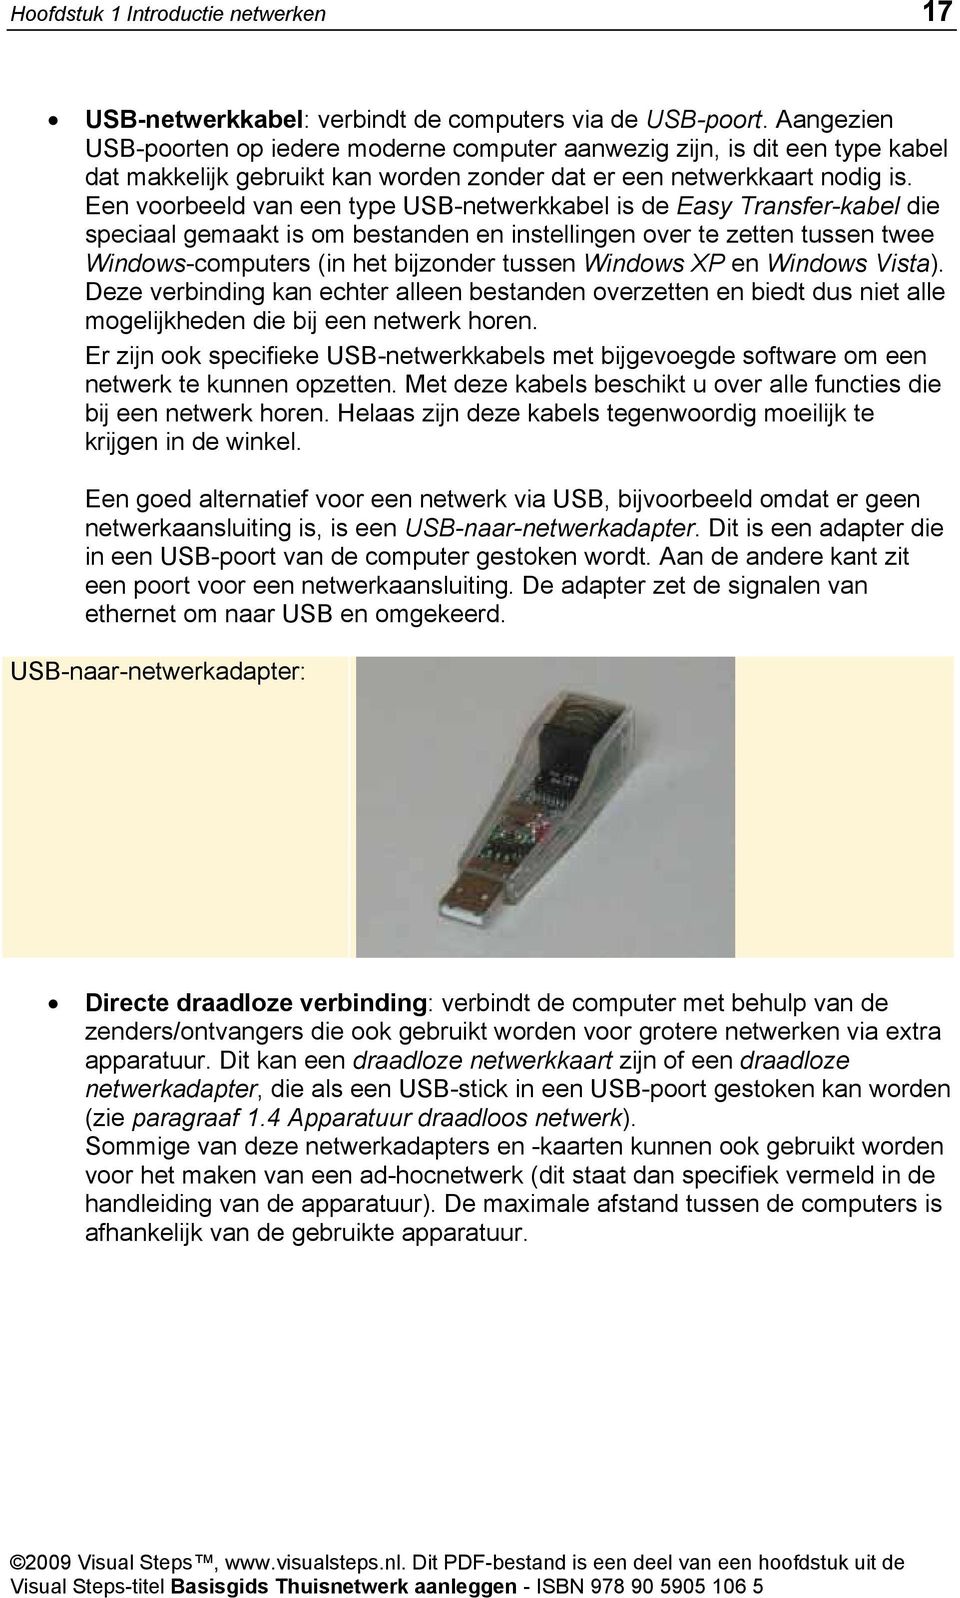 Een voorbeeld van een type USB-netwerkkabel is de Easy Transfer-kabel die speciaal gemaakt is om bestanden en instellingen over te zetten tussen twee Windows-computers (in het bijzonder tussen